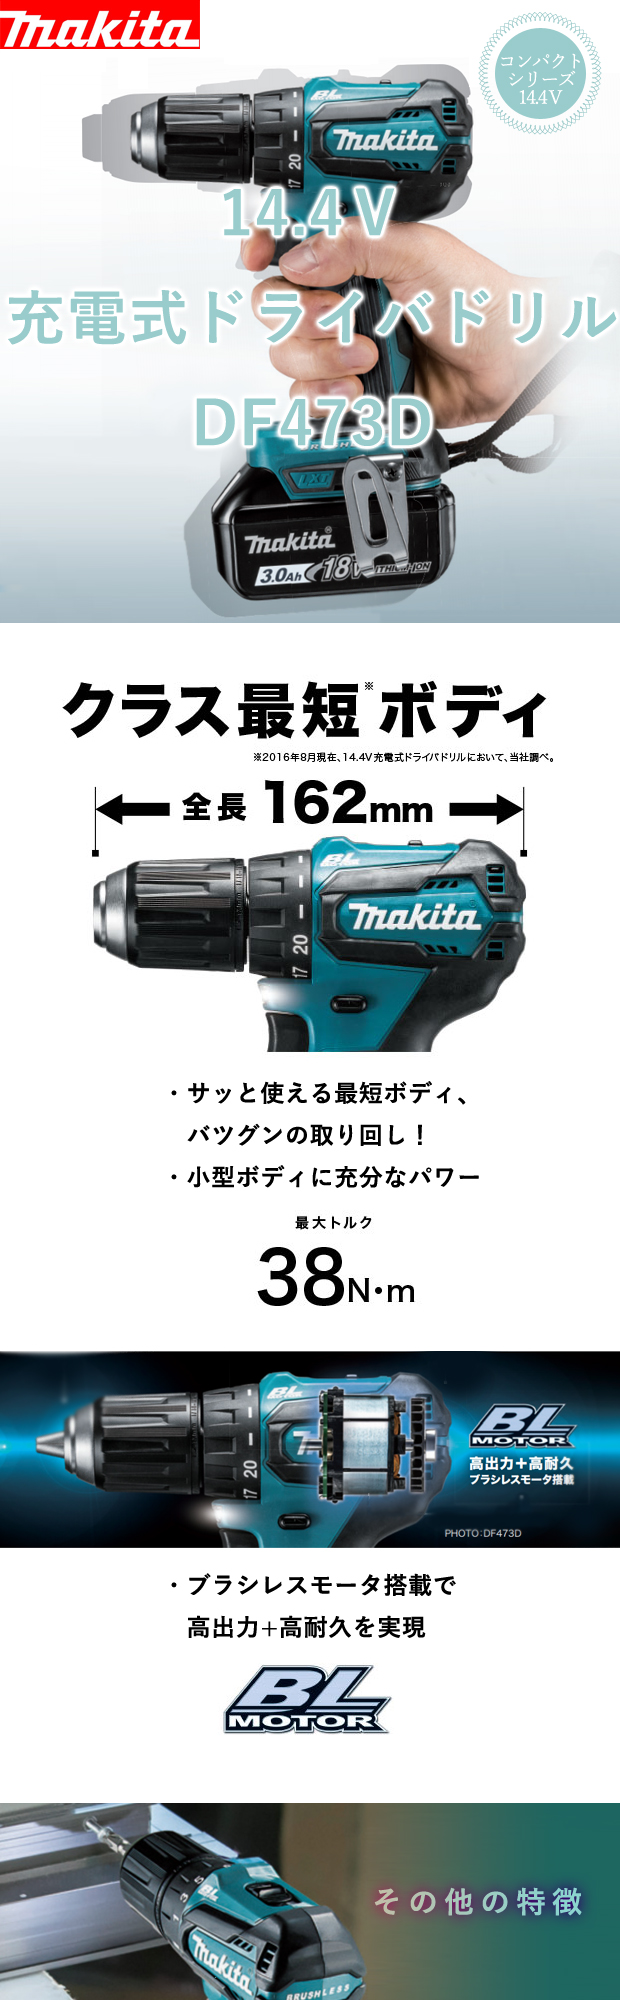 マキタ 14.4V充電式ドライバドリル DF473D 電動工具・エアー工具・大工